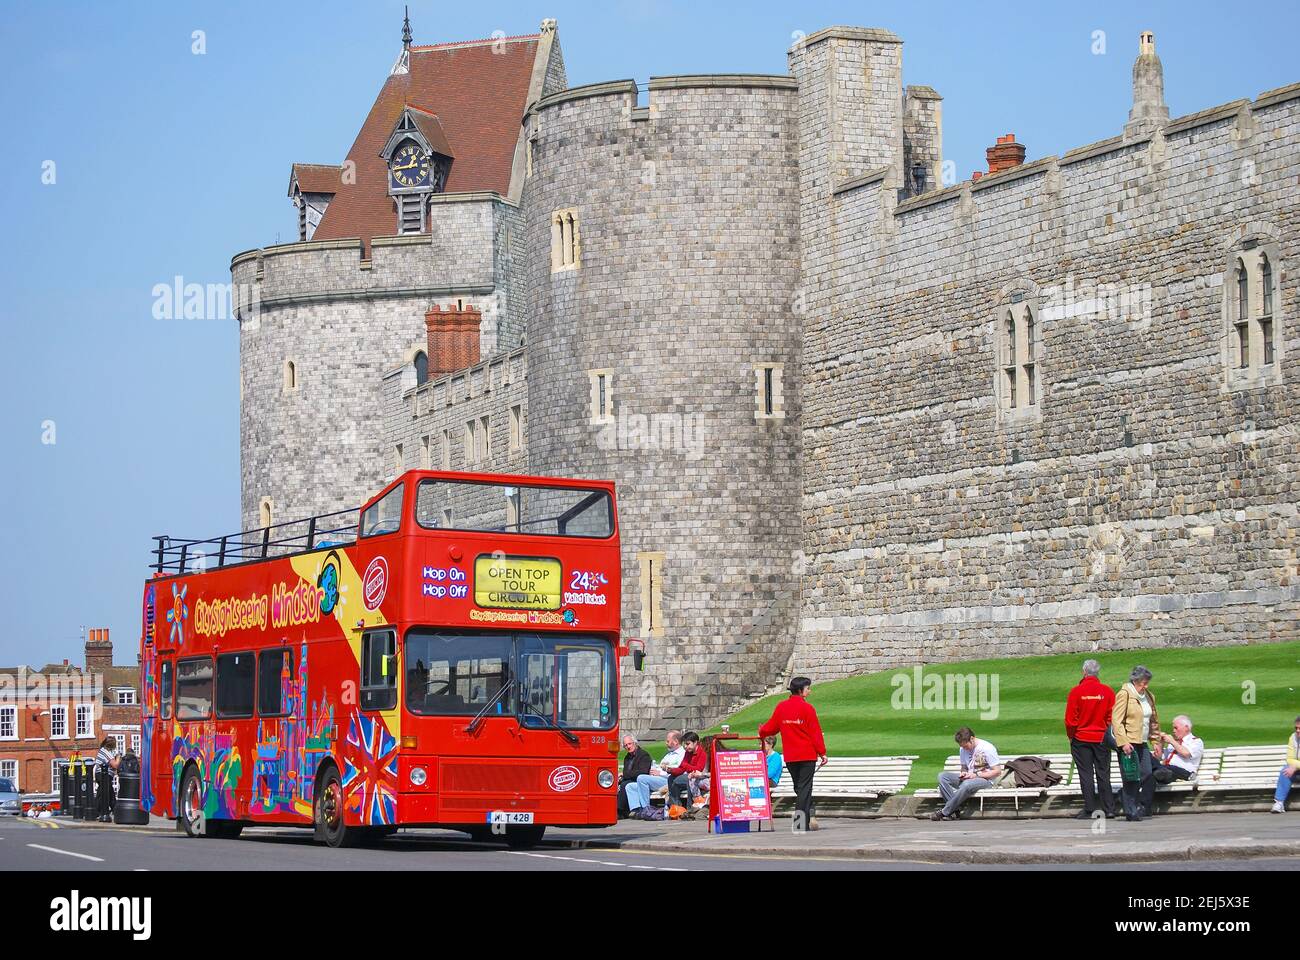 Autobus turistico accanto al Castello di Windsor, High Street, Windsor, Berkshire, Inghilterra, Regno Unito Foto Stock